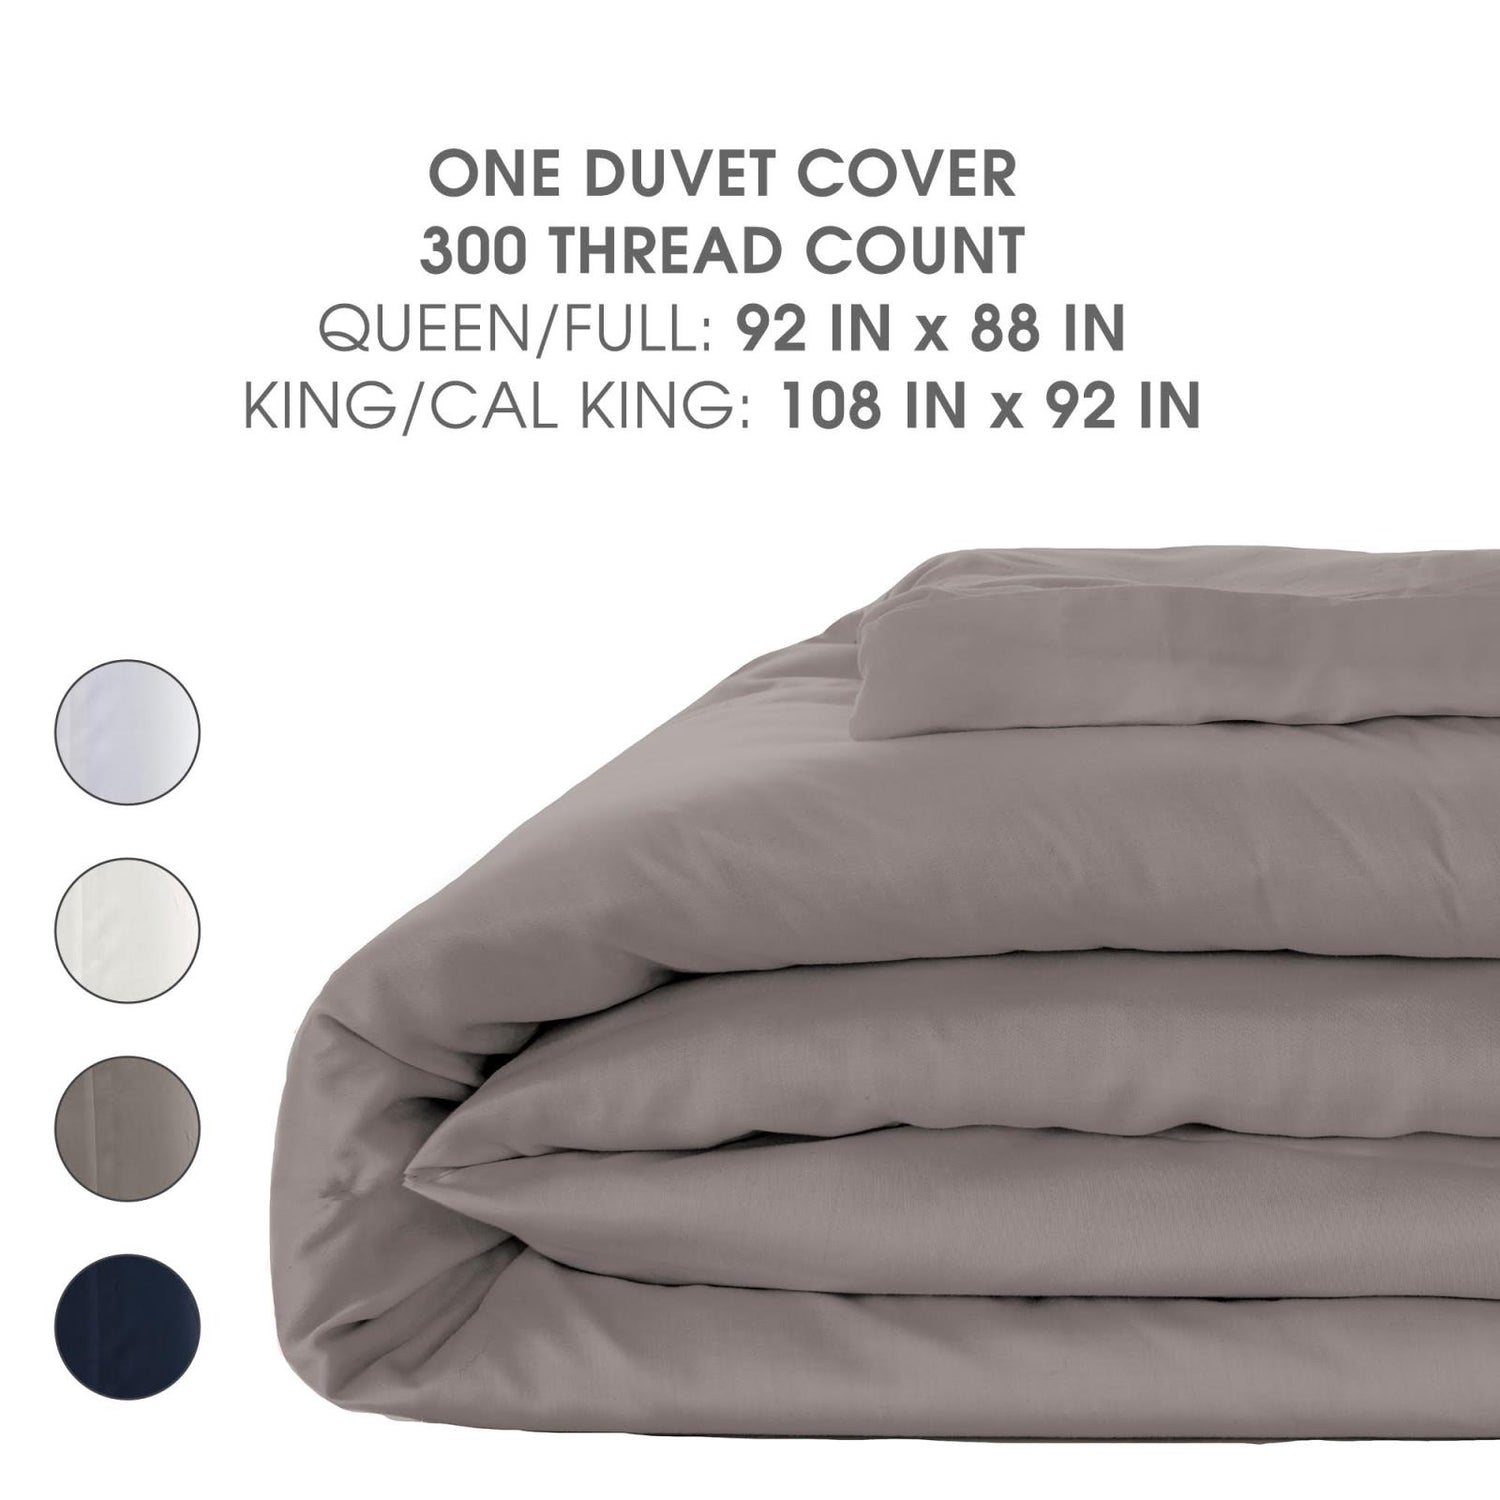 Woven Duvet Cover in White